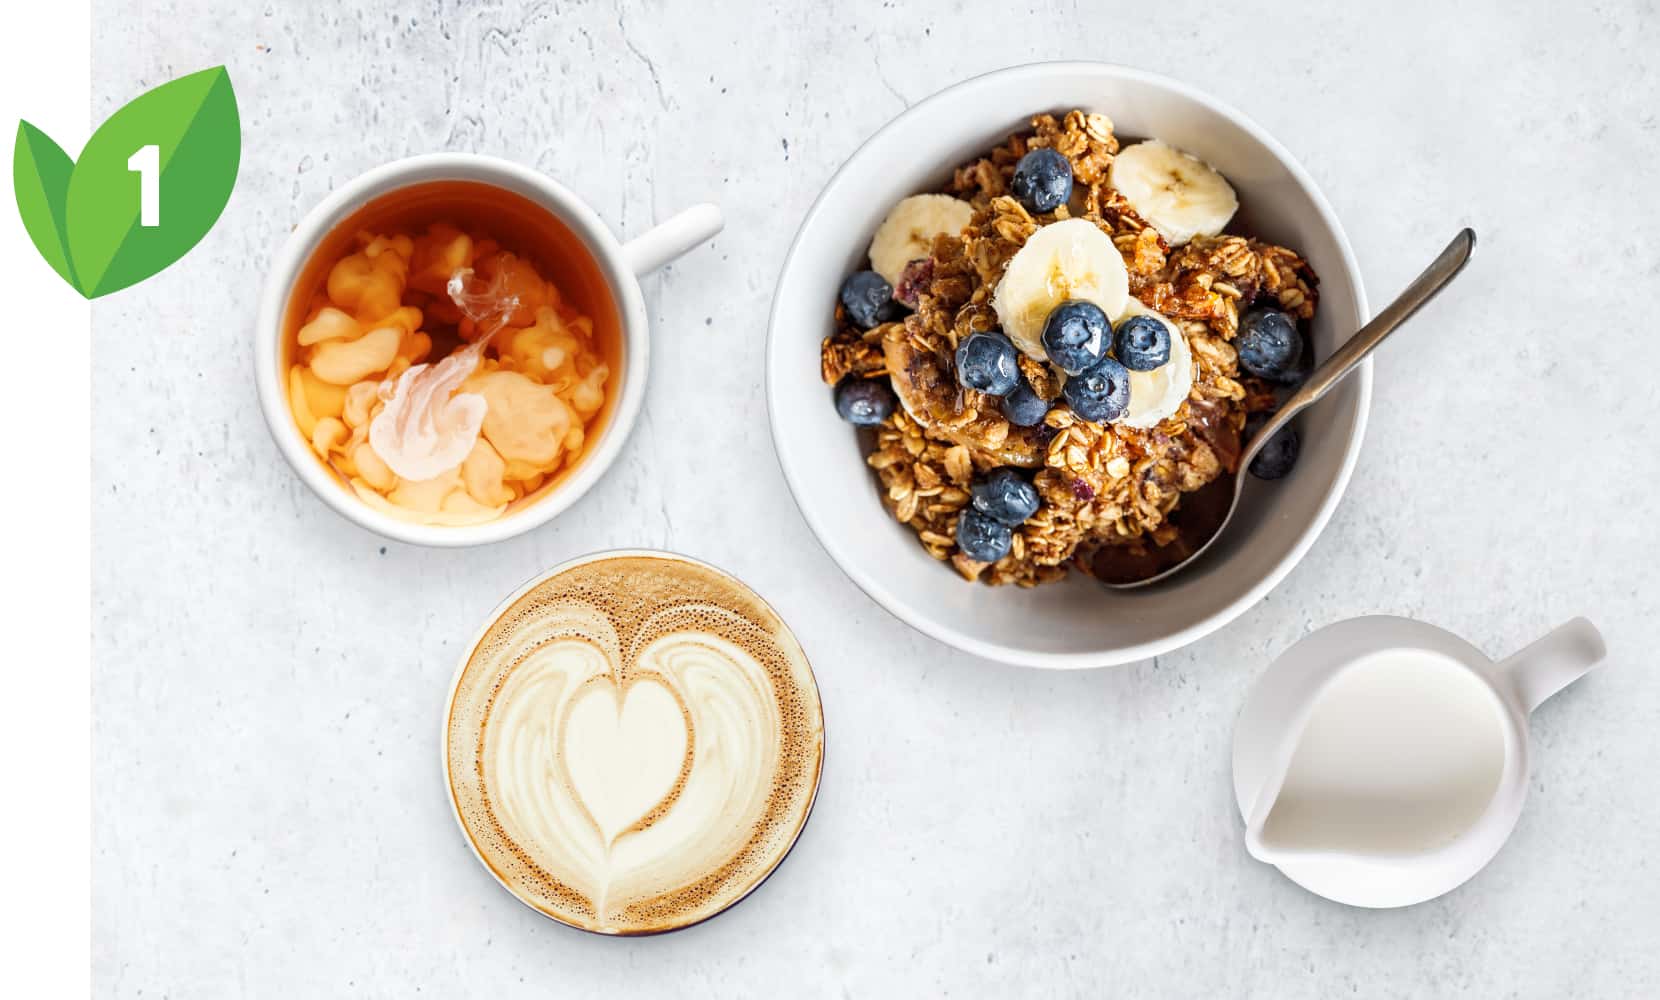 ao-lowers-cholesterol-switch-tips-breakfast